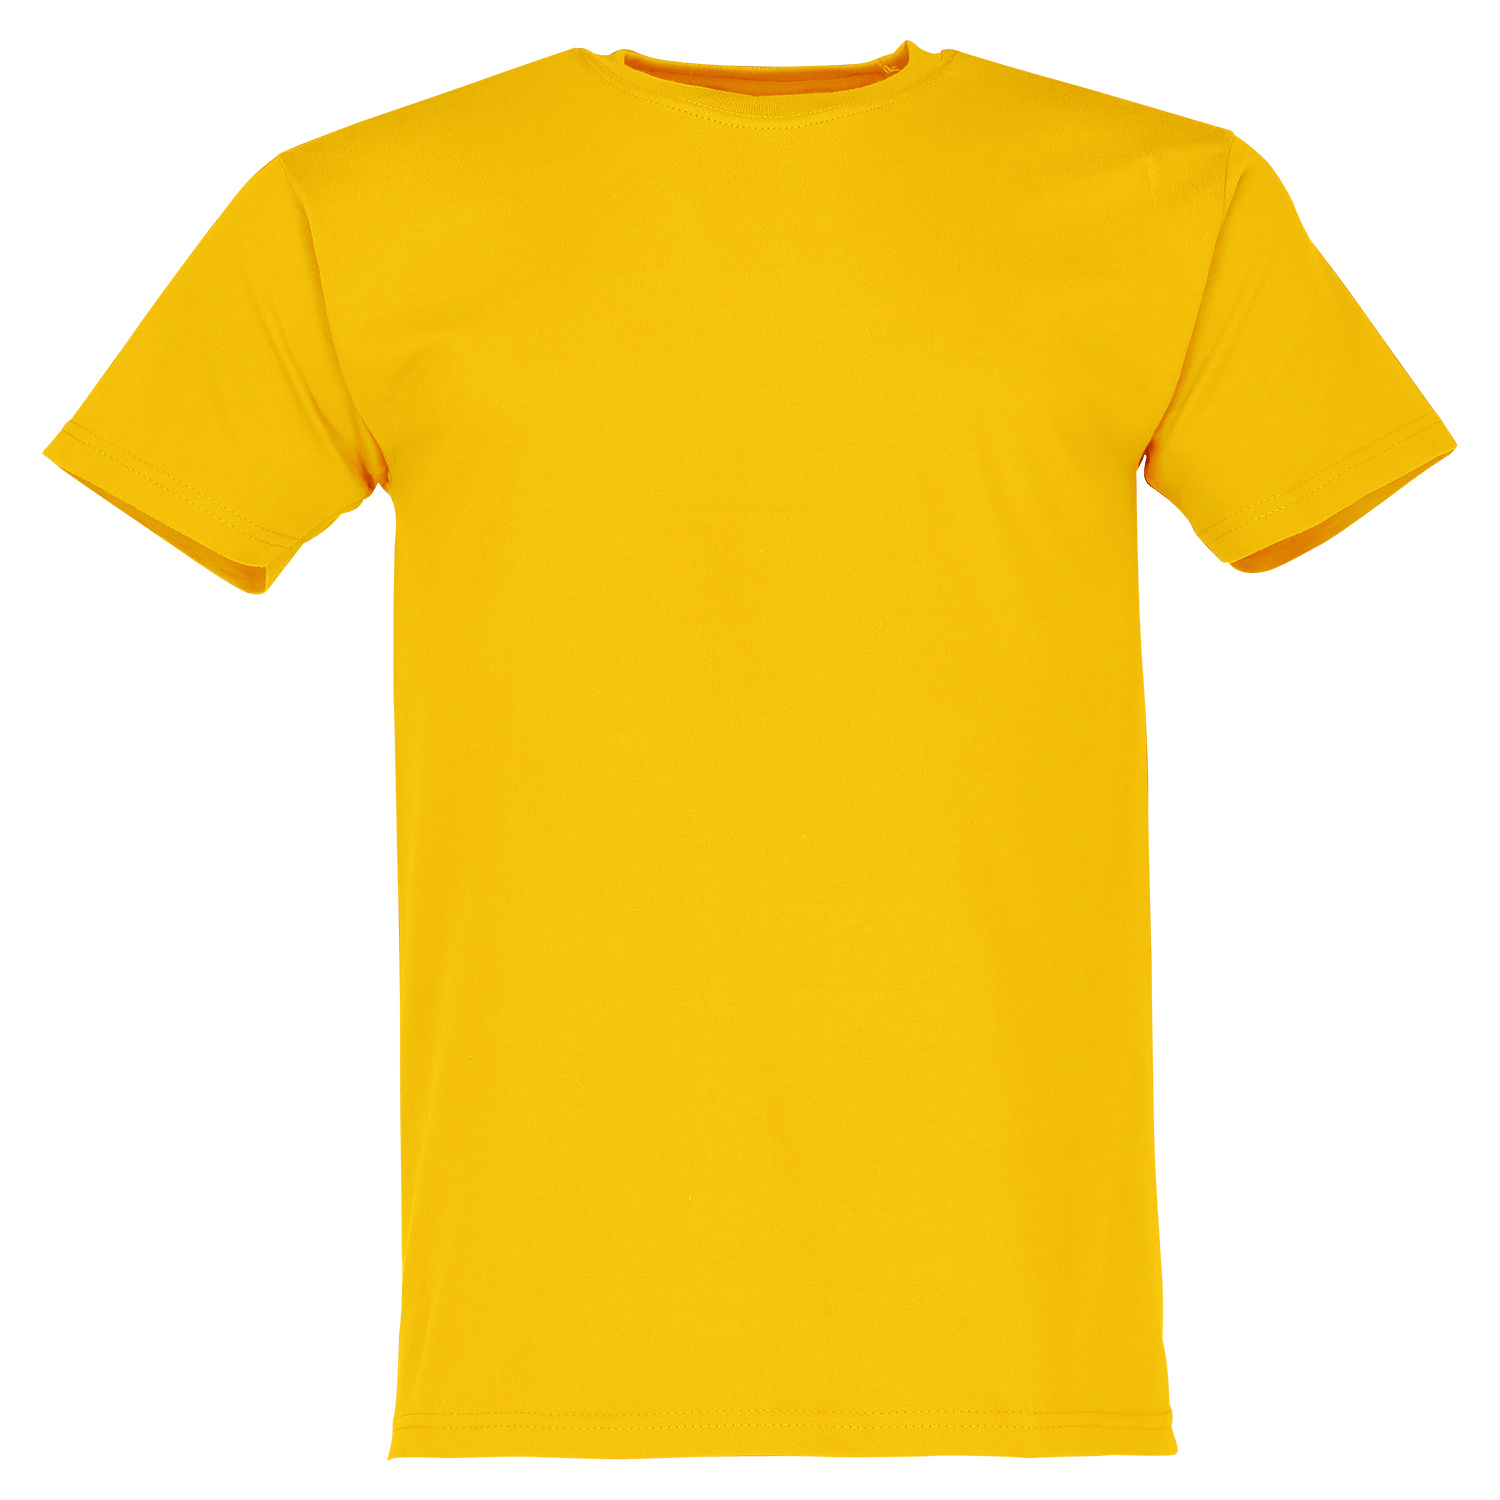 tee shirt yellow